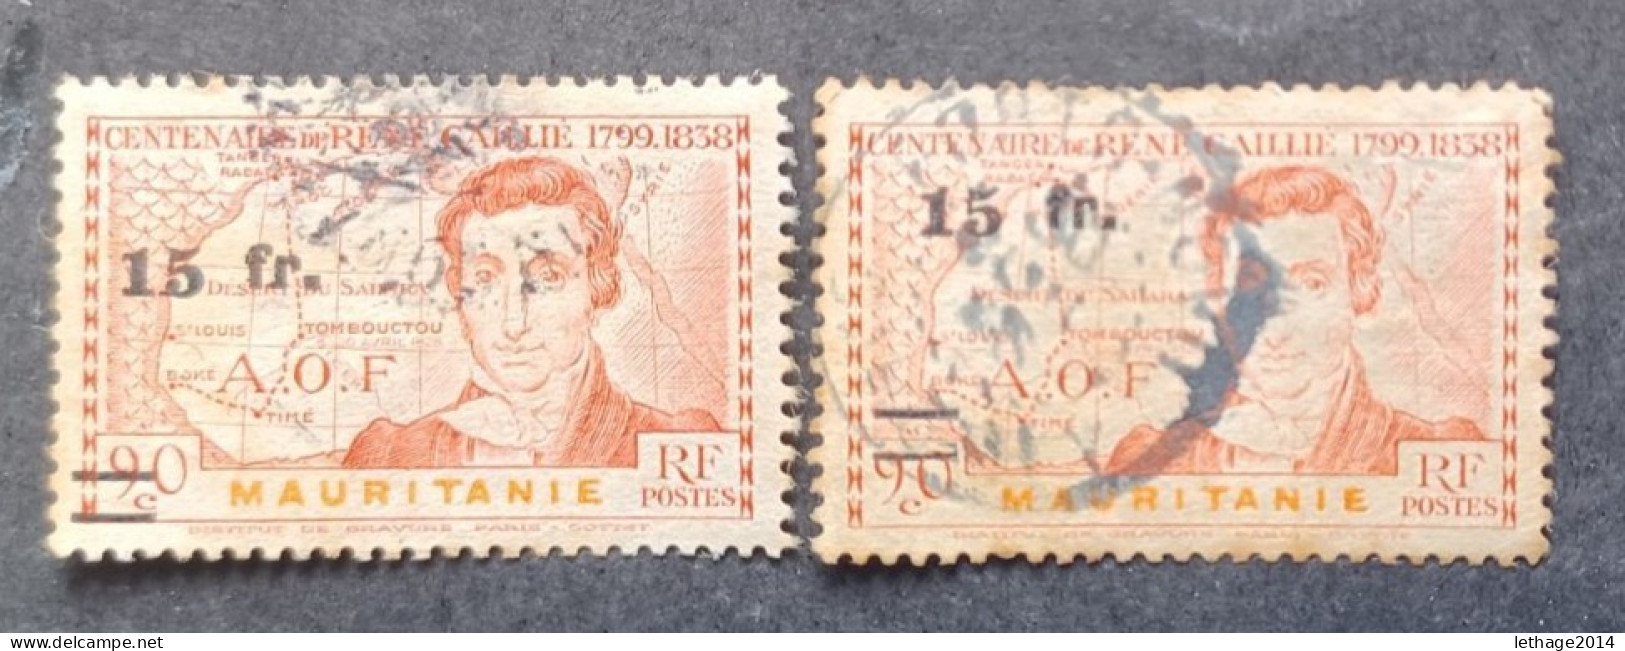 COLONIE FRANCE MAURITANIE 1944 GRAVES CAT YVERT N 137 VARIETE OVERPRINT MOVED - Used Stamps